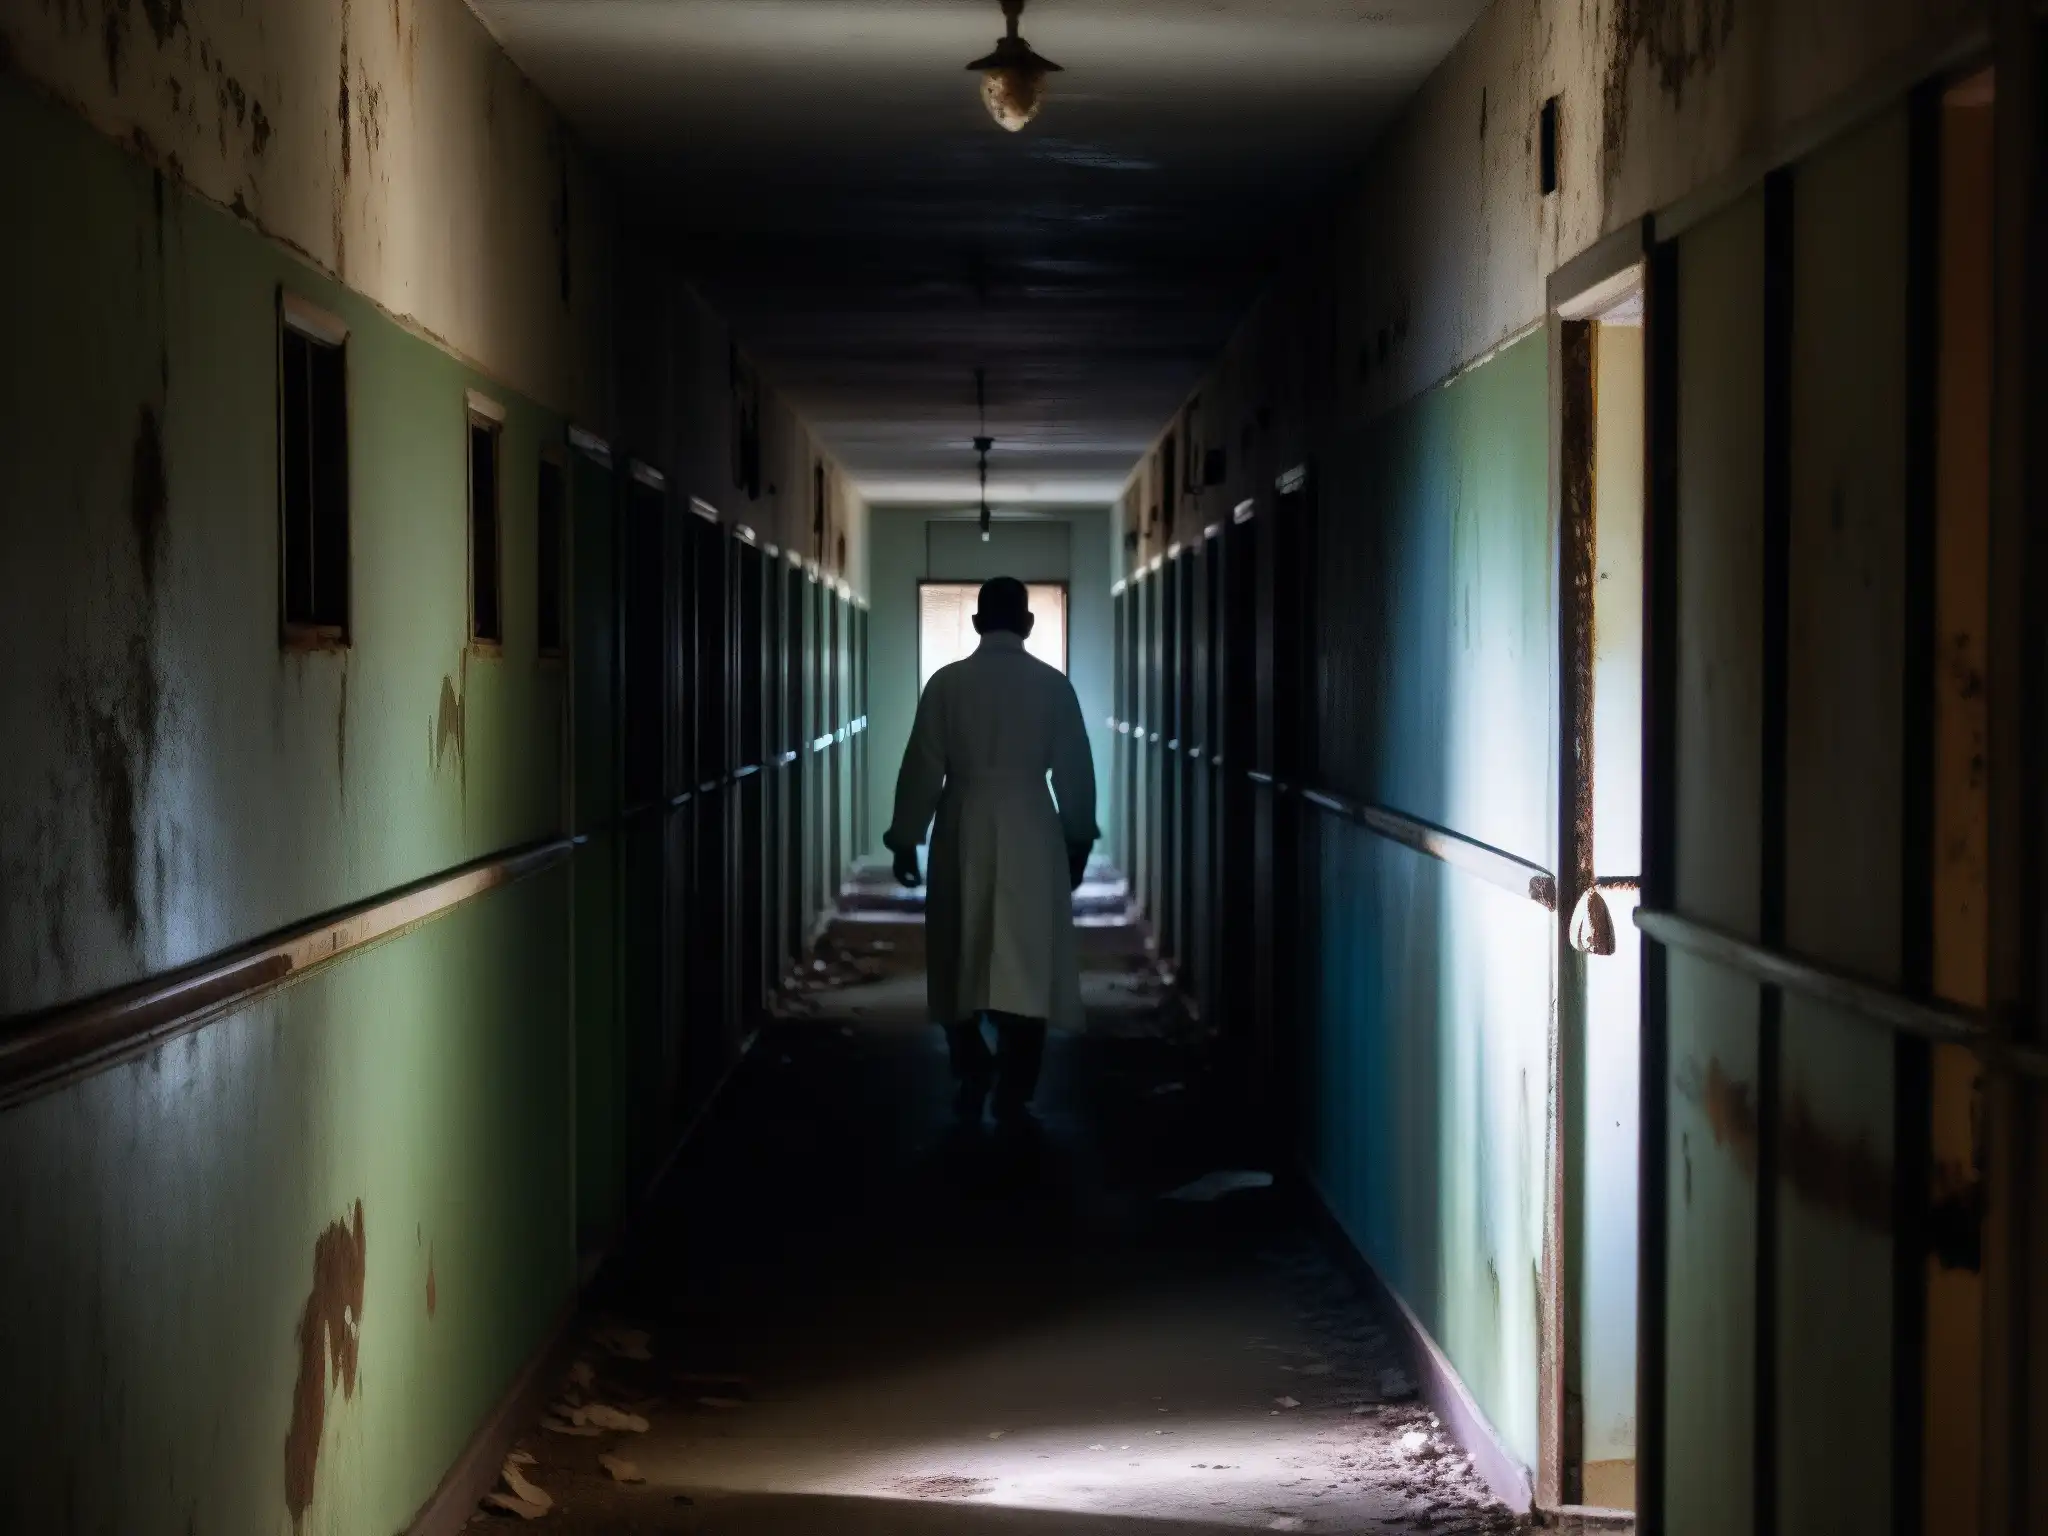 Corredor abandonado de un asilo con camas oxidadas y figuras fantasmales, evocando psicosis inducida por leyendas urbanas